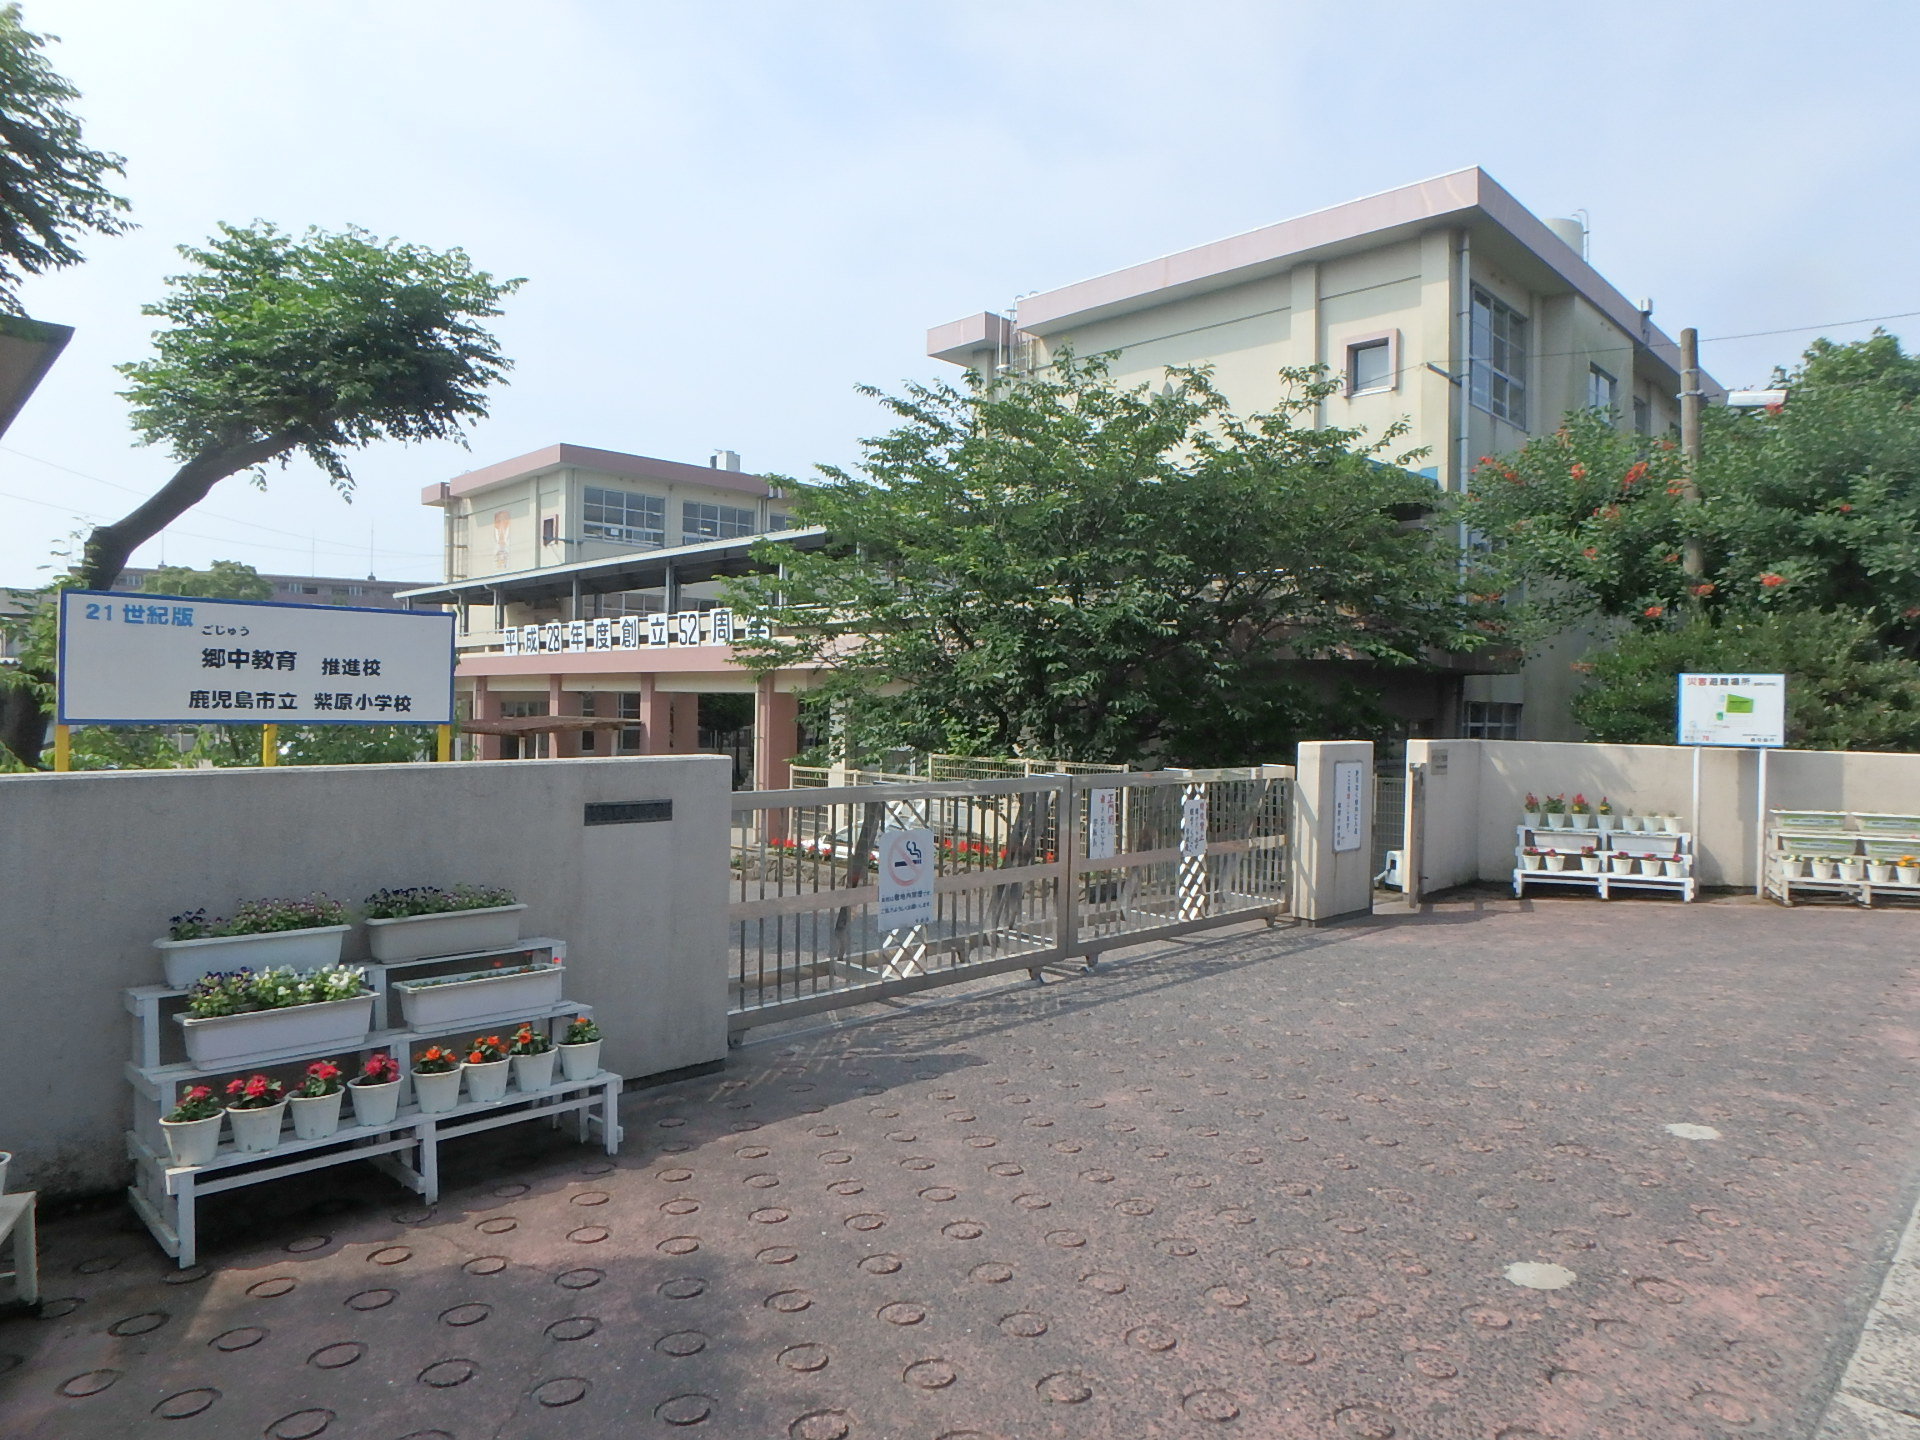 小学校 施設名称：鹿児島市立紫原小学校 距離：900m